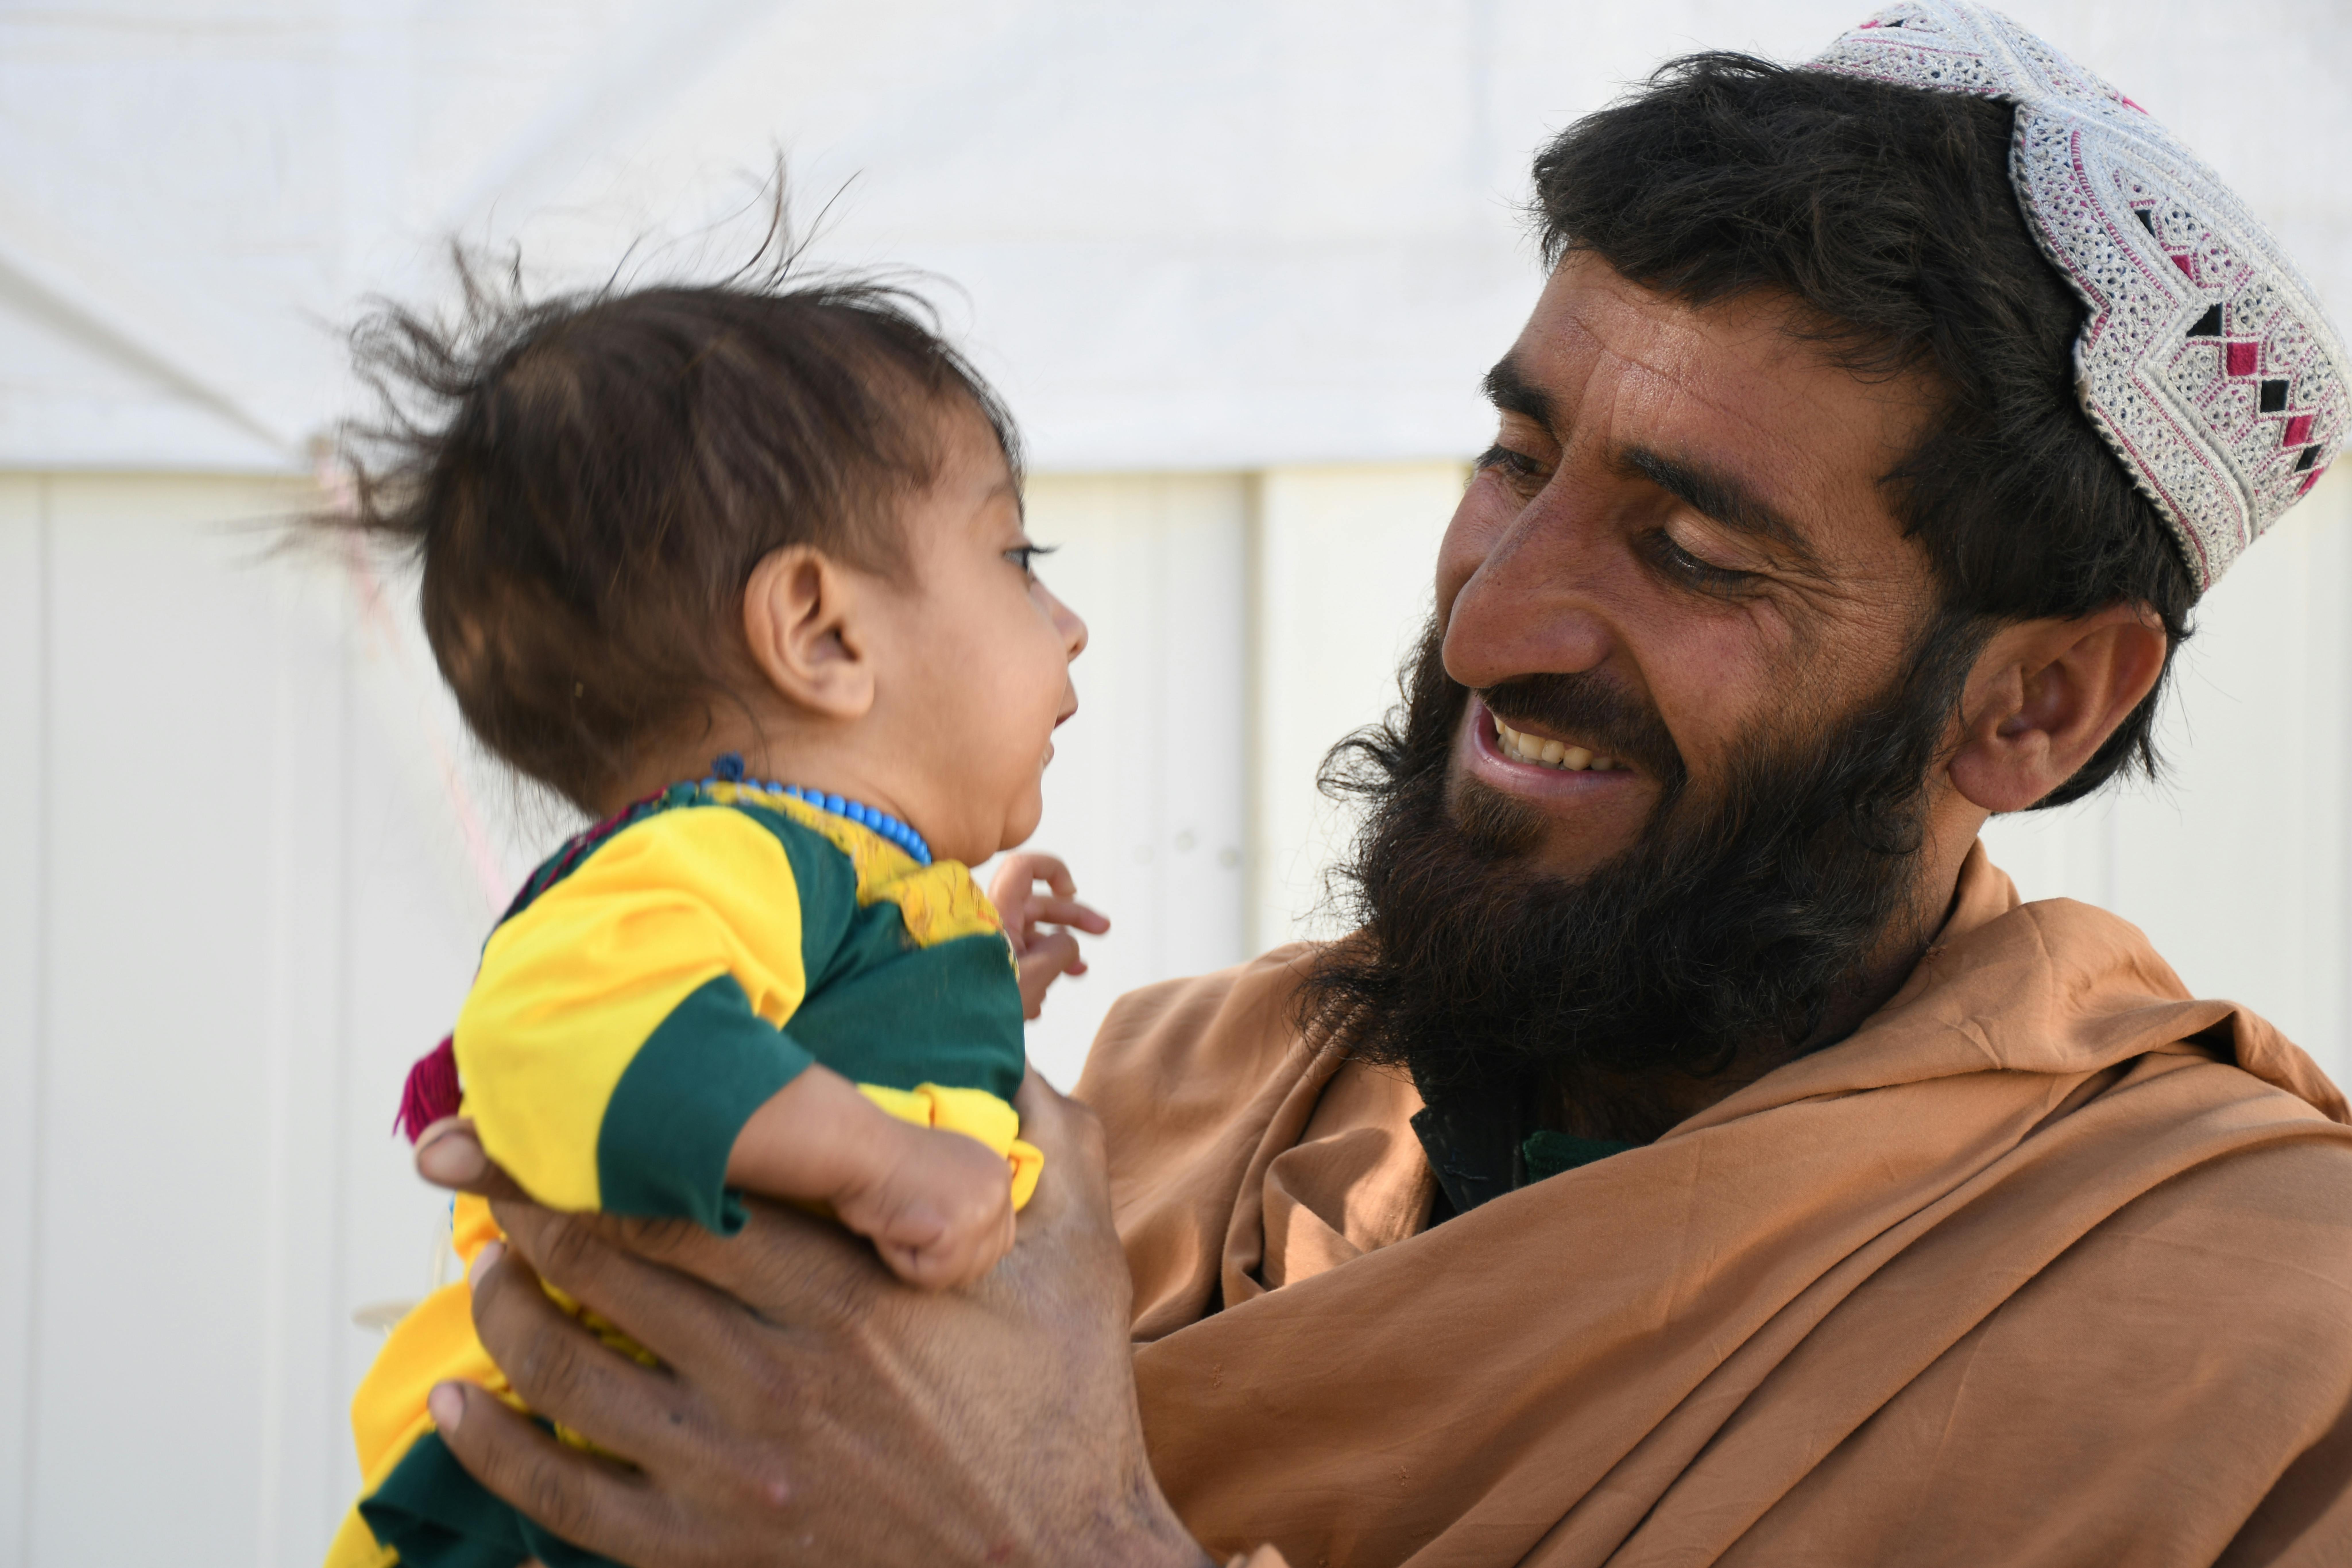 Fatima, 11 mesi, è in braccio al papà Najibullah dopo essere stata per malnutrizione in una clinica supportata dall'UNICEF Kandahar, Afghanistan. Ha preso 1,5 kg nelle ultime settimane, è una buona notizia: si sta riprendendo